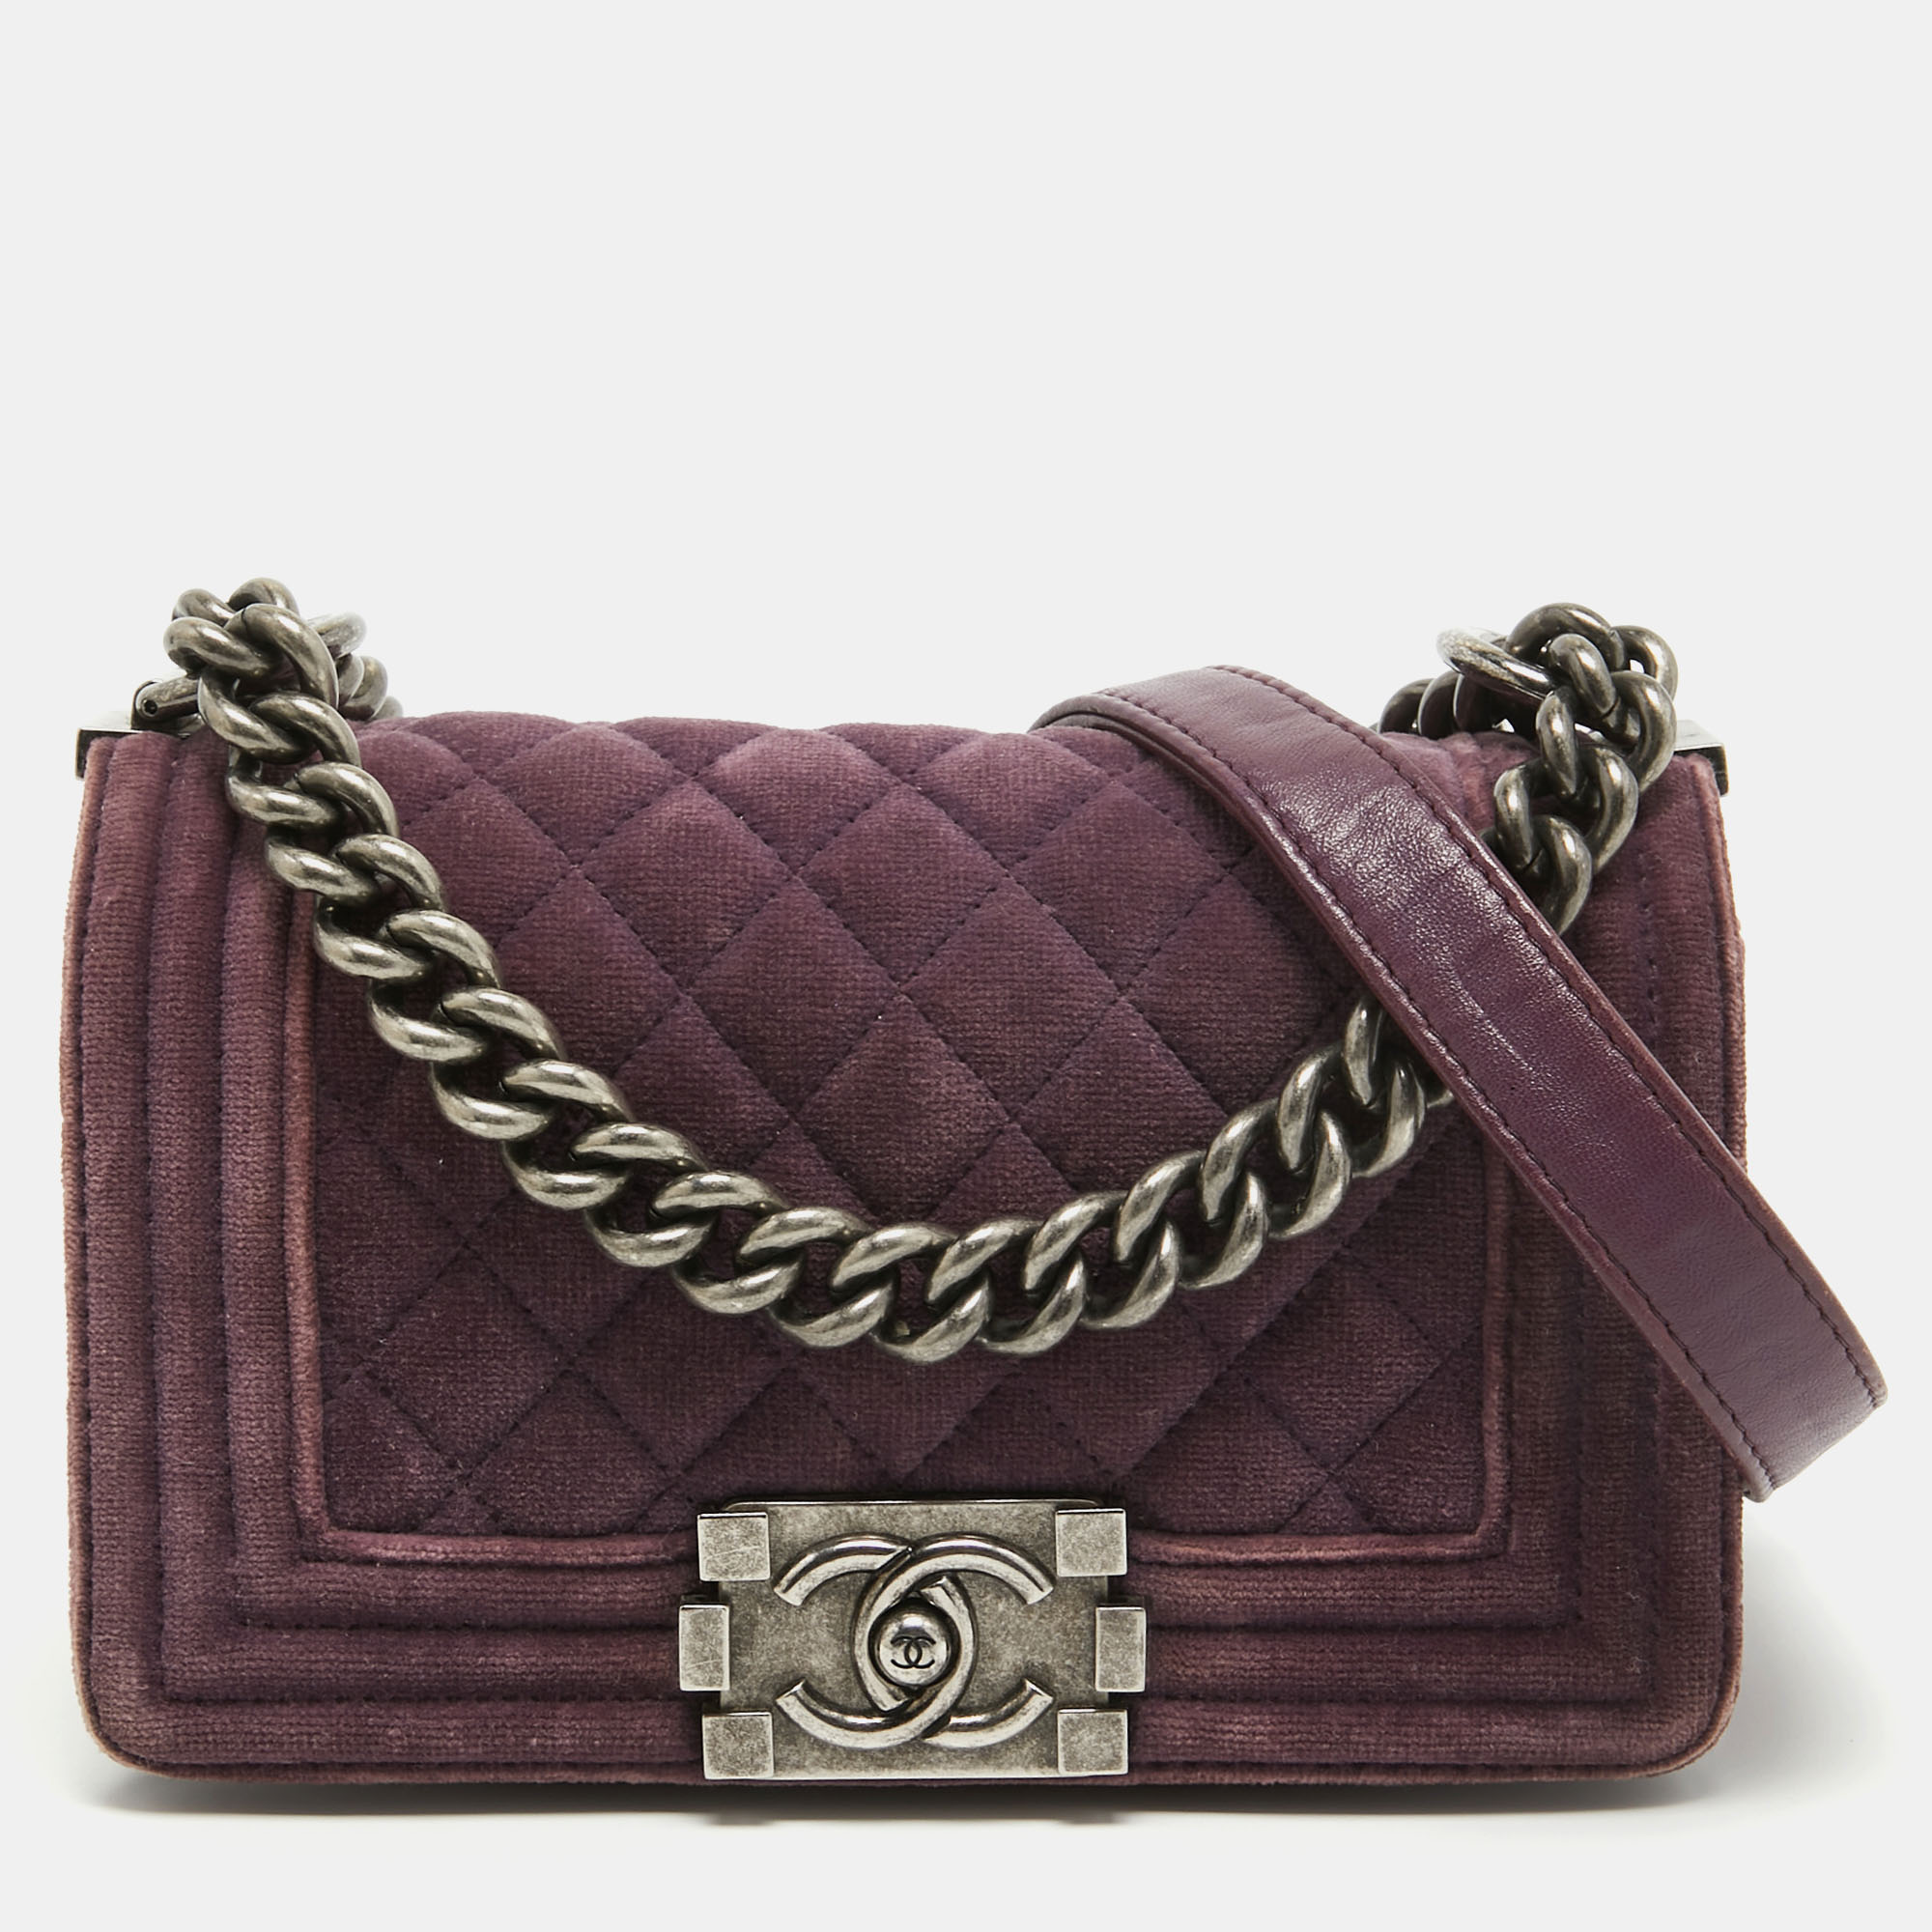 Chanel purple velvet small boy bag